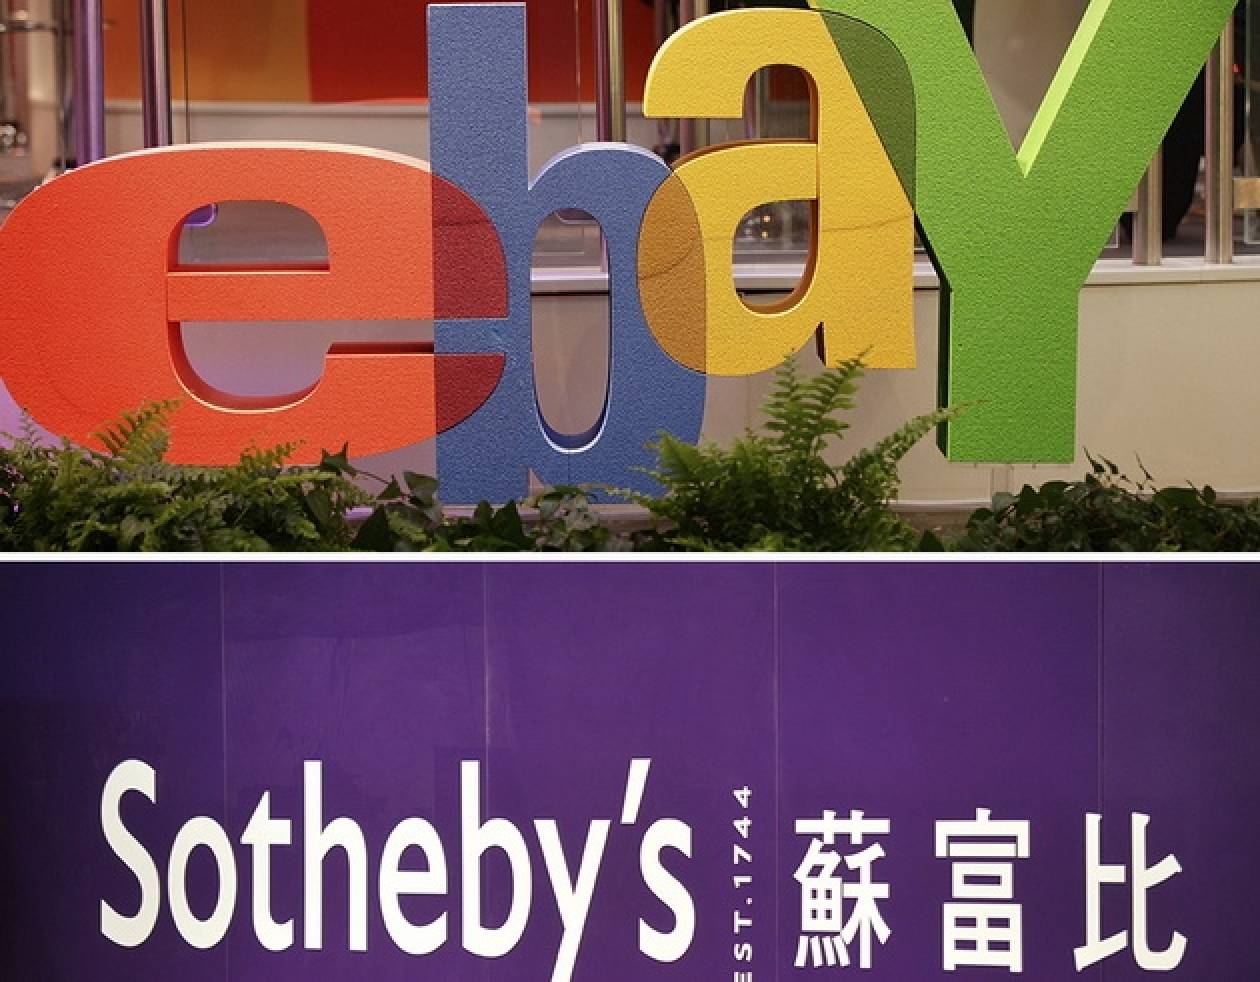 Ο οίκος Sotheby’s ανακοίνωσε τη συνεργασία του με το eBay